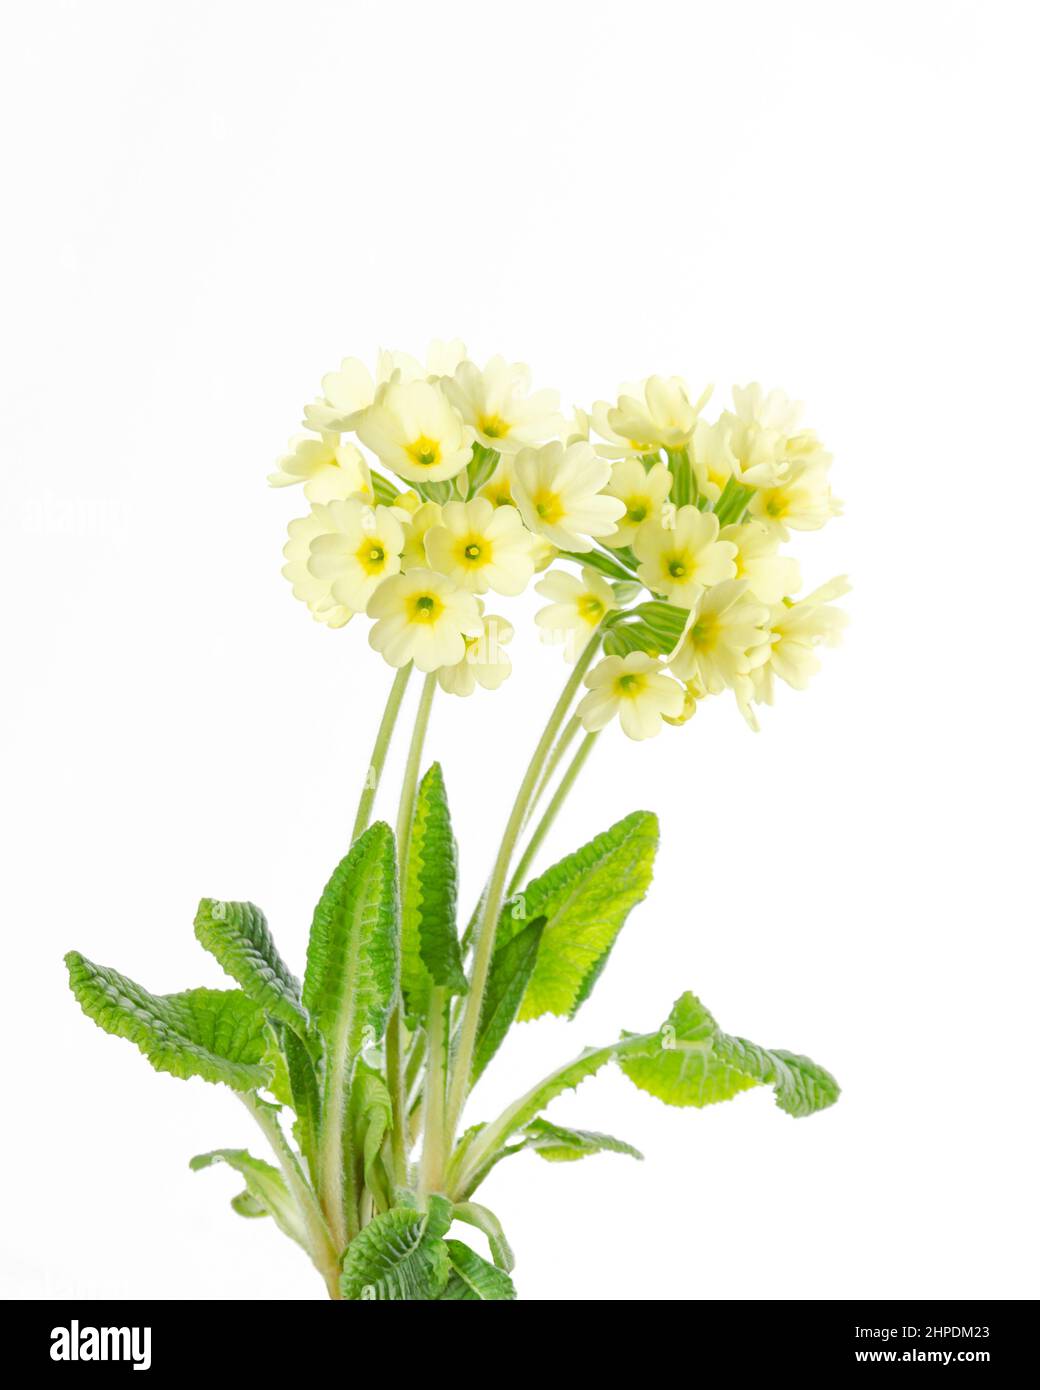 Primrose commune, Primula vulgaris, vue de face, sur fond blanc. Aussi connu sous le nom de primrose anglais, est une espèce de plante à fleurs. Banque D'Images